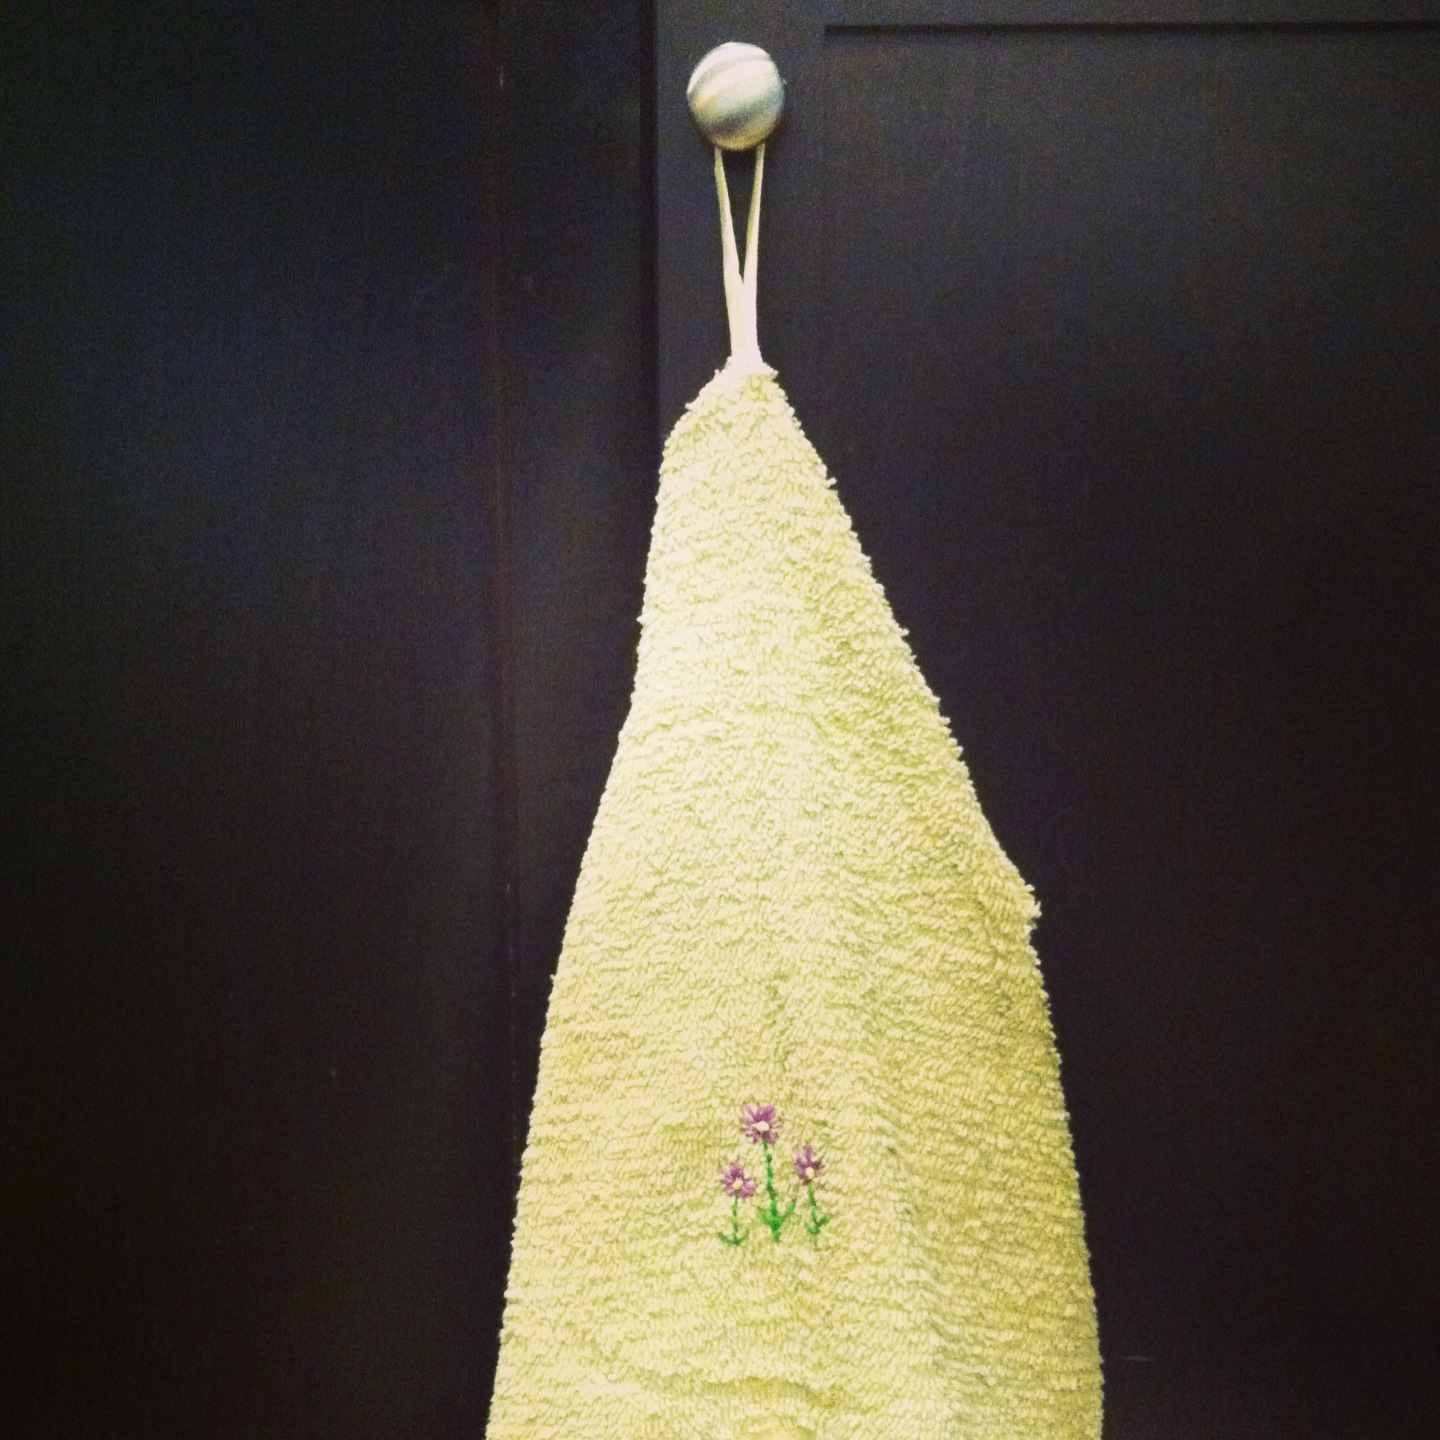 Hanging Kitchen Hand Towel: Easy DIY Tutorial